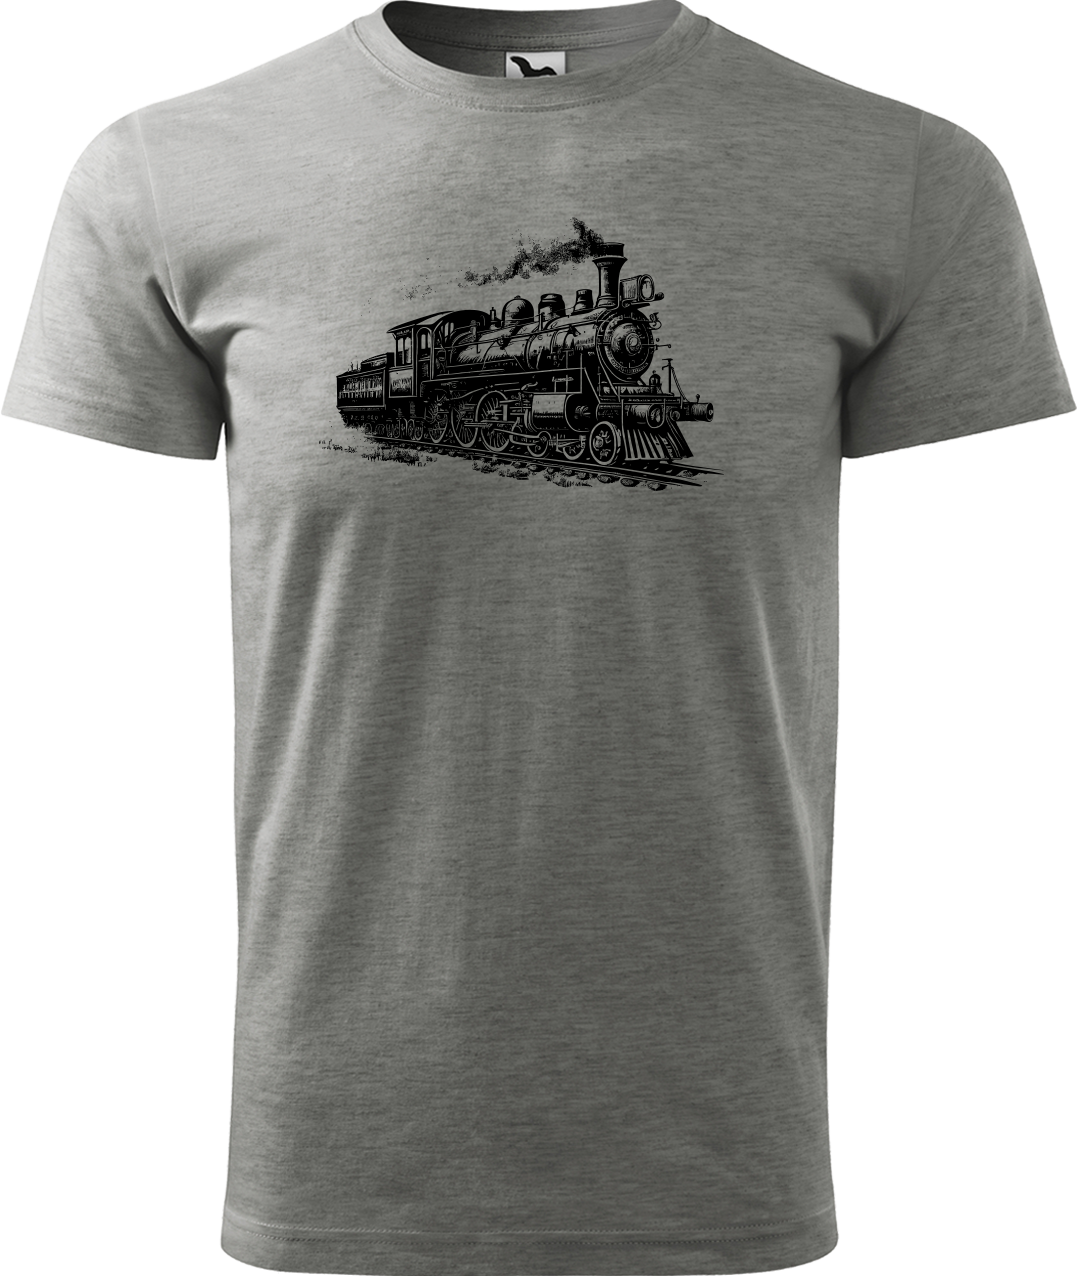 Tričko s vlakem - Stará lokomotiva Velikost: L, Barva: Tmavě šedý melír (12)